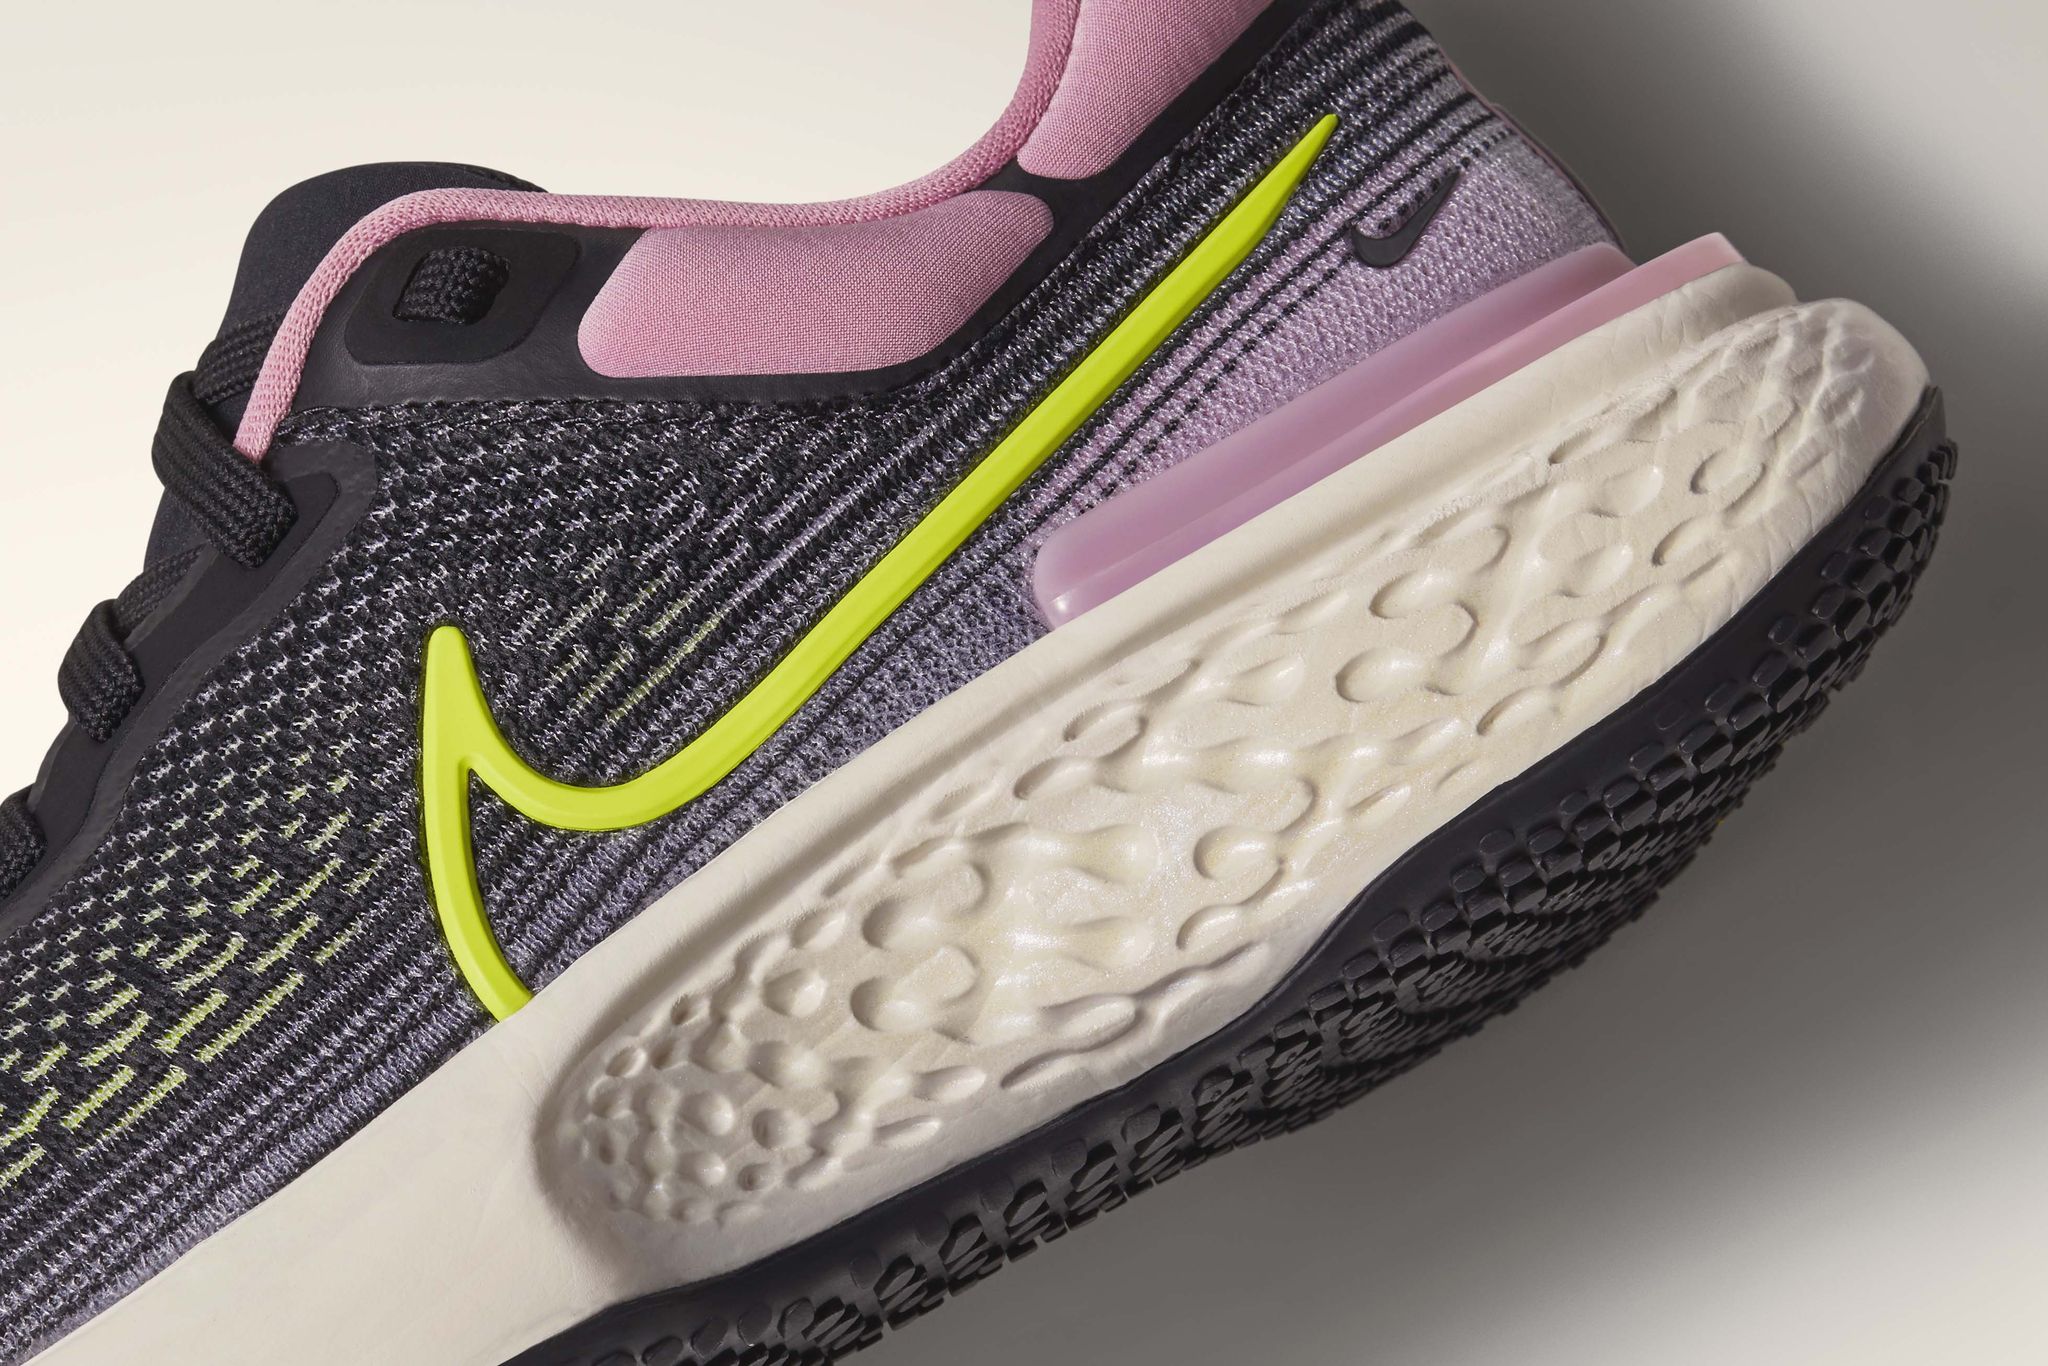 Nike Zoom X Invincible Run – a shoe designed for long training runs